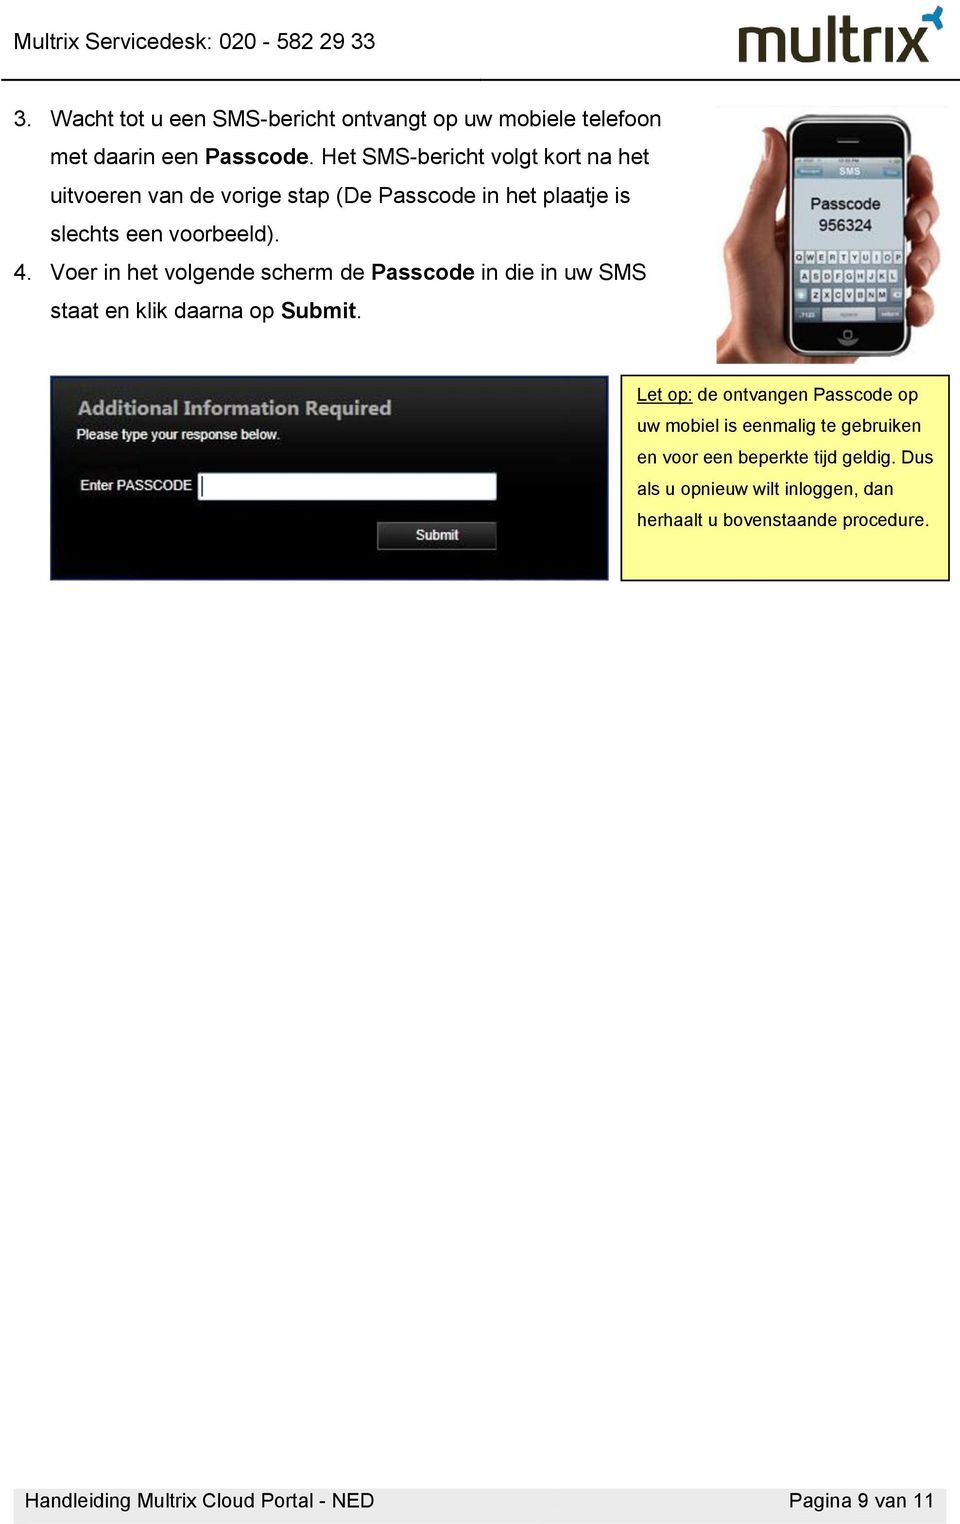 Voer in het volgende scherm de Passcode in die in uw SMS staat en klik daarna op Submit.